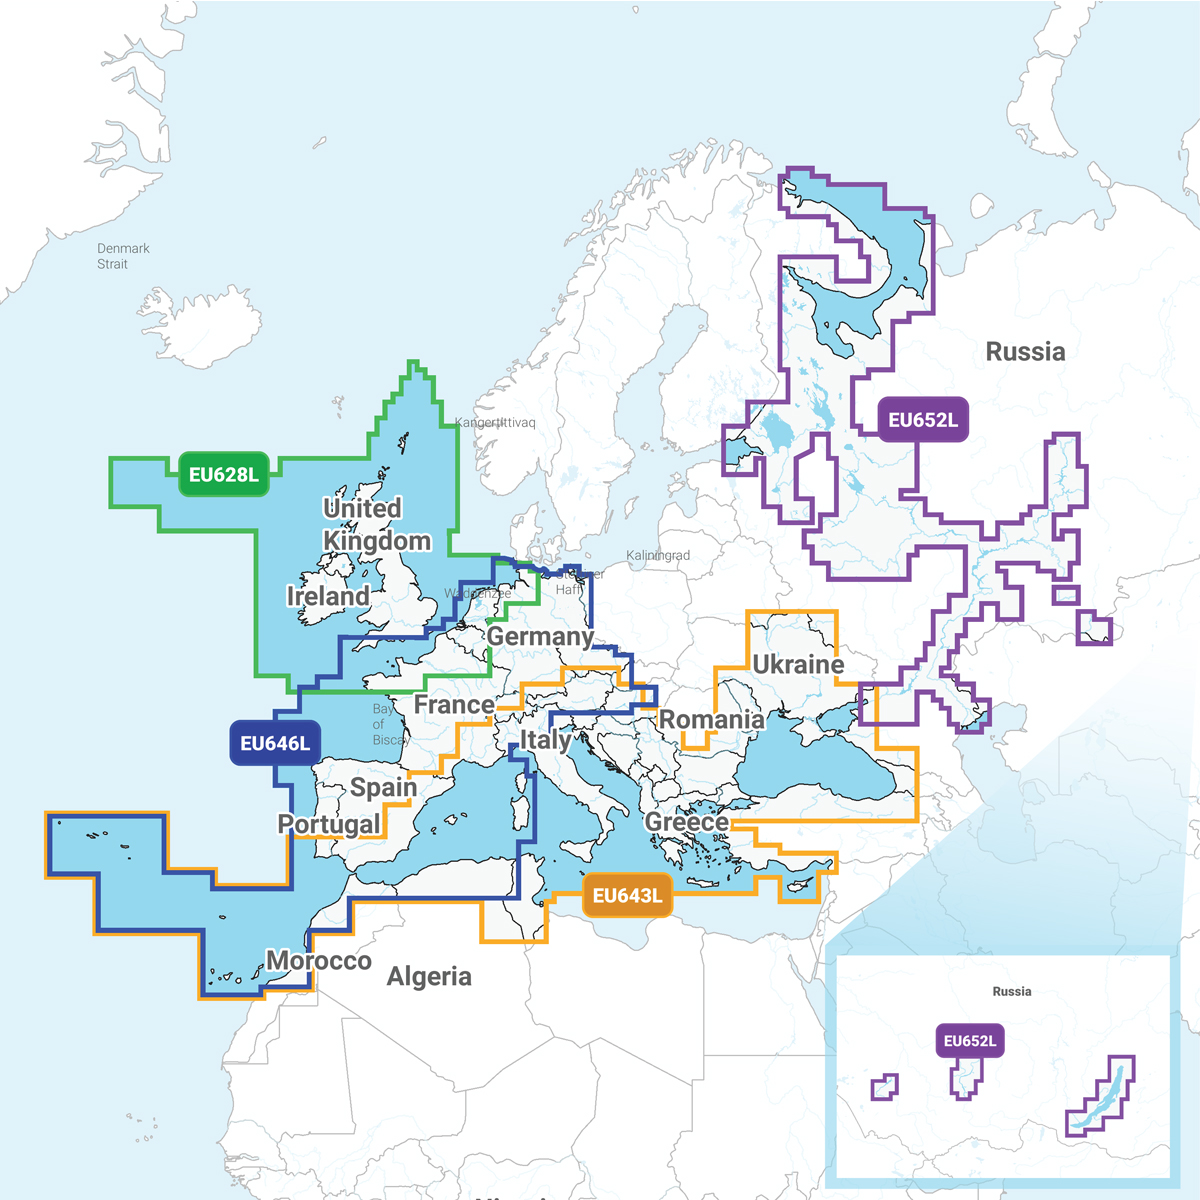 Navionics-Seekarten-Gruppierte-Regionen-Europa